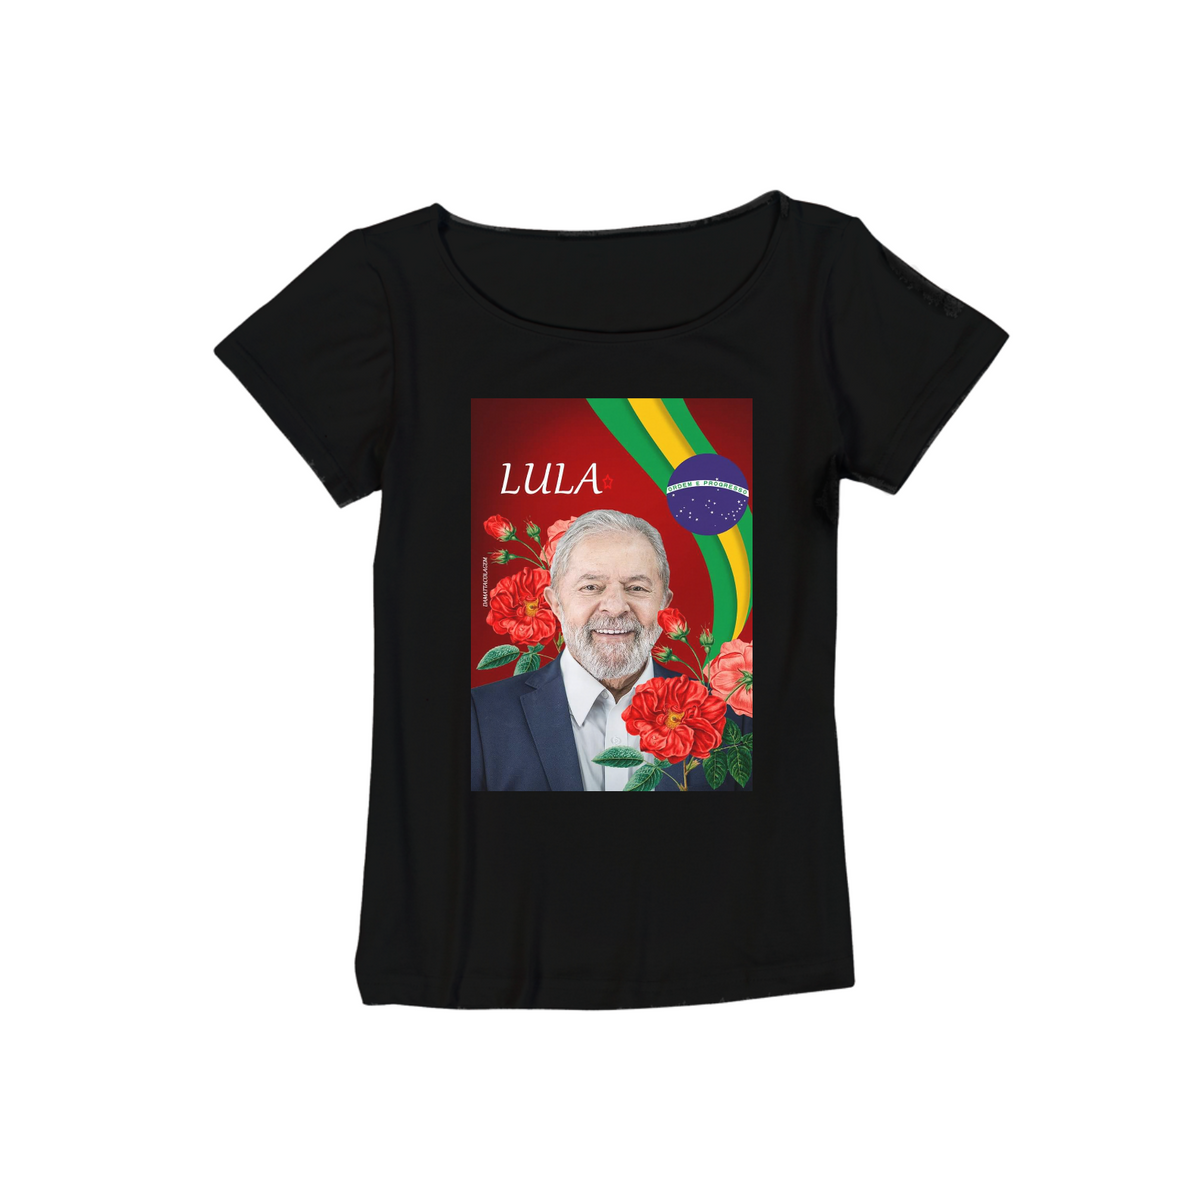 Nome do produto: Lula